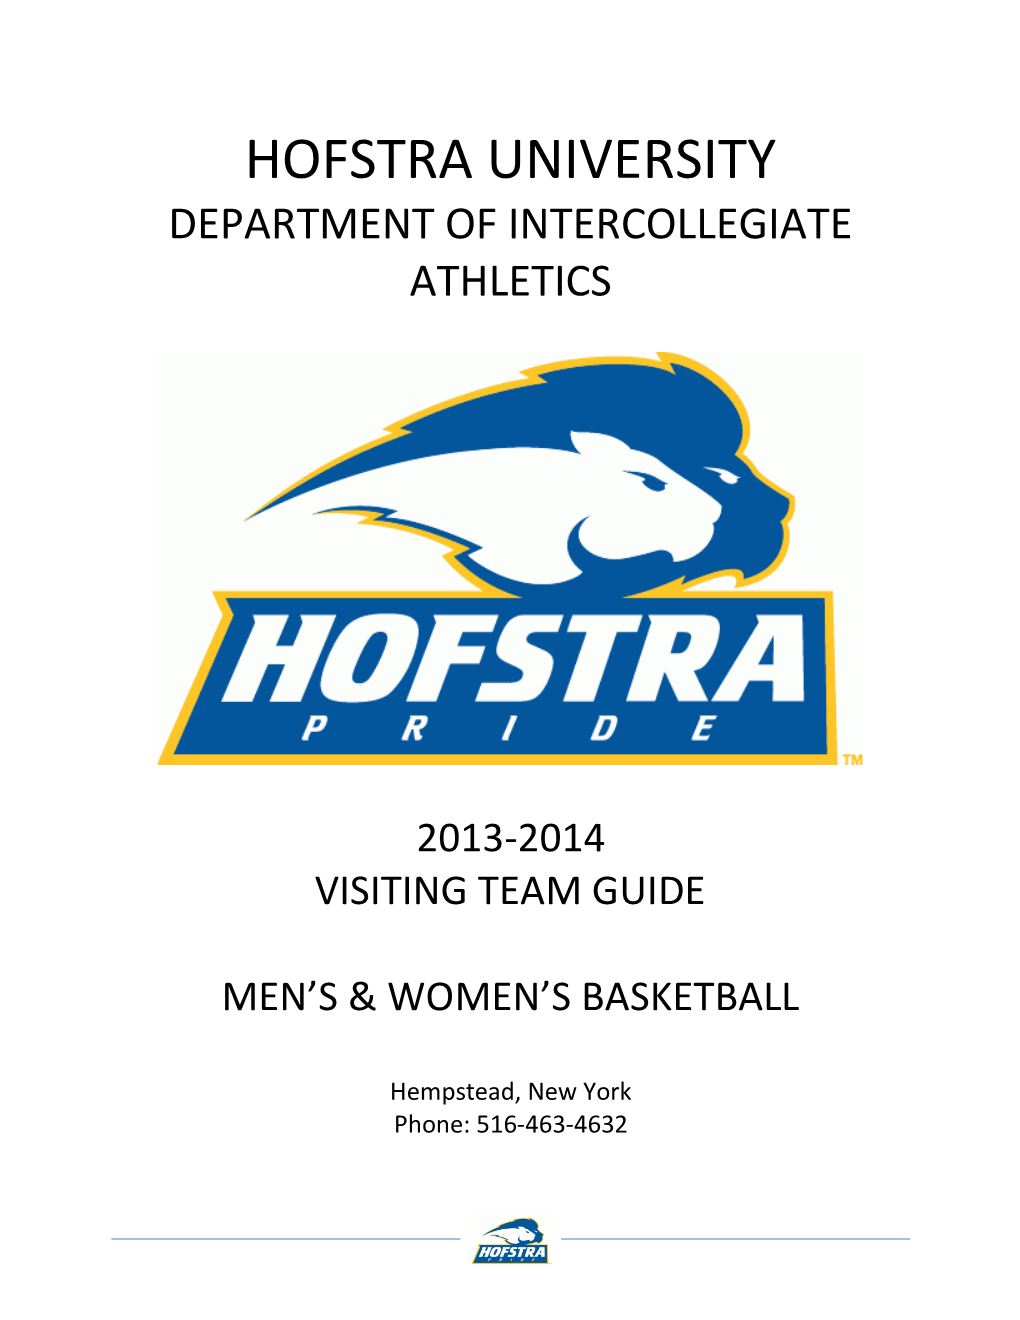 Hofstra University Department of Intercollegiate Athletics